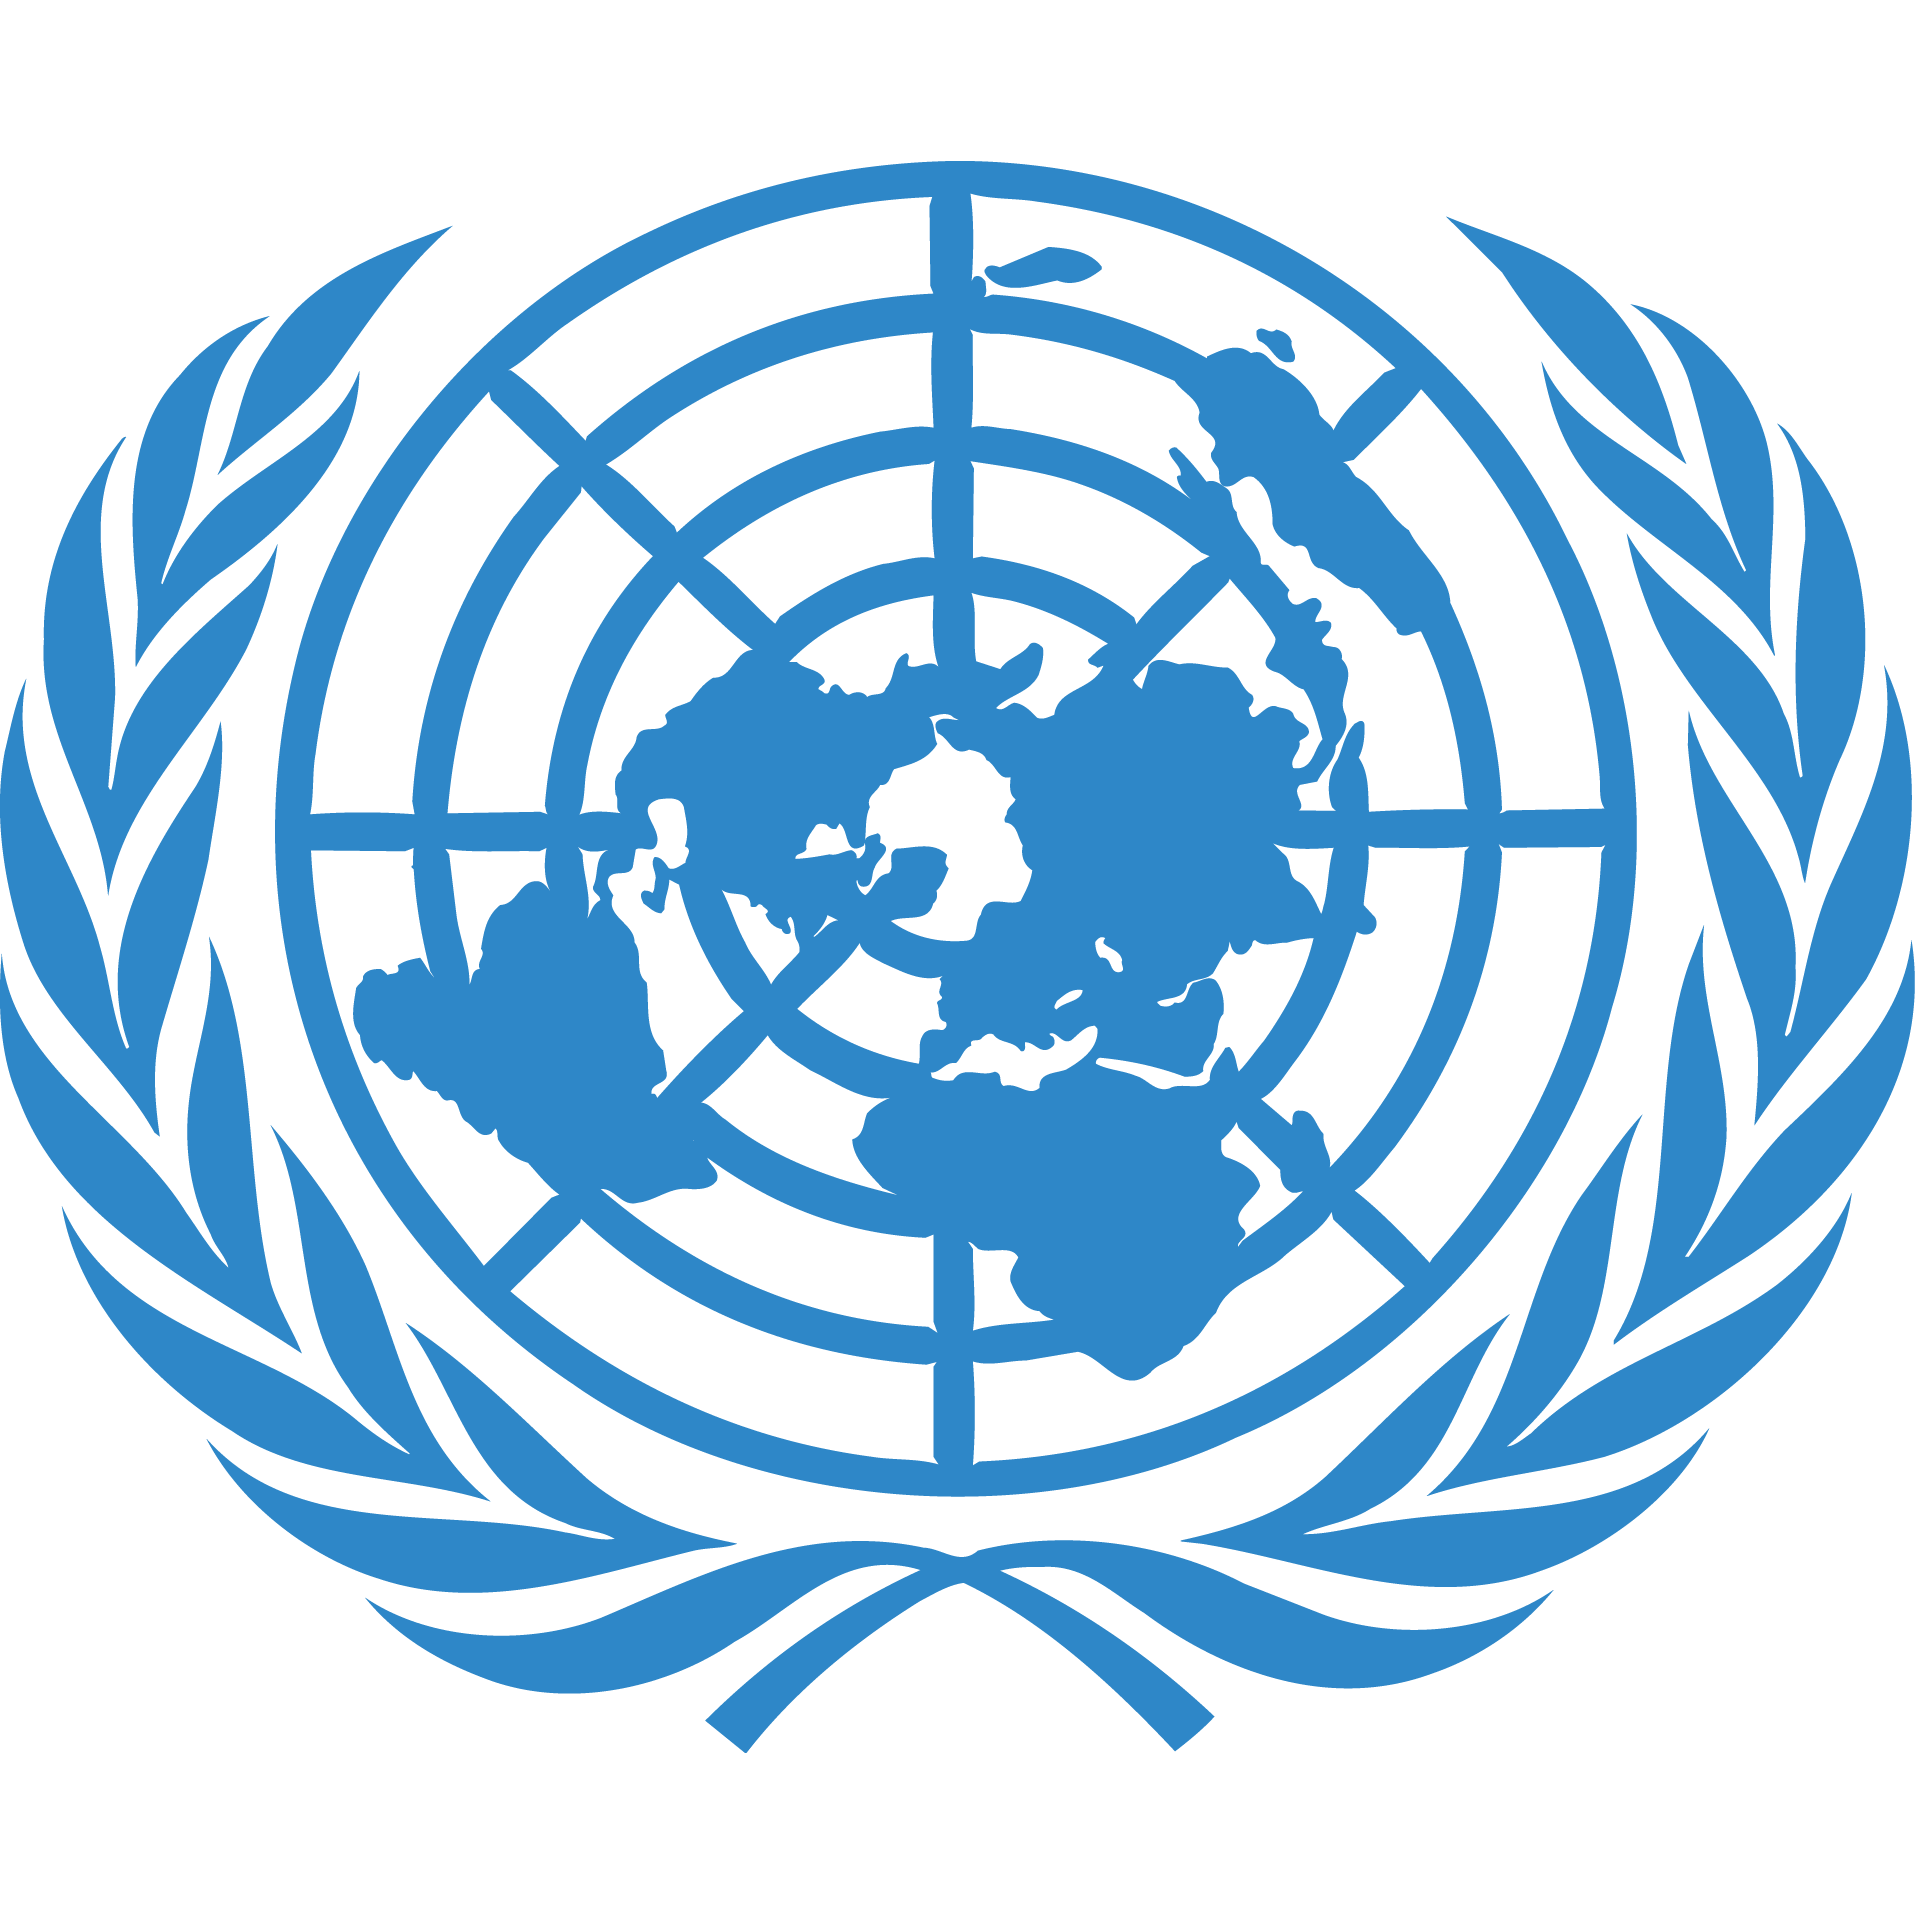 Оон энергия. Организация Объединённых наций ООН эмблема. Флаг организации Объединенных наций. Совет безопасности ООН эмблема. Экономический и социальный совет ООН (ЭКОСОС).